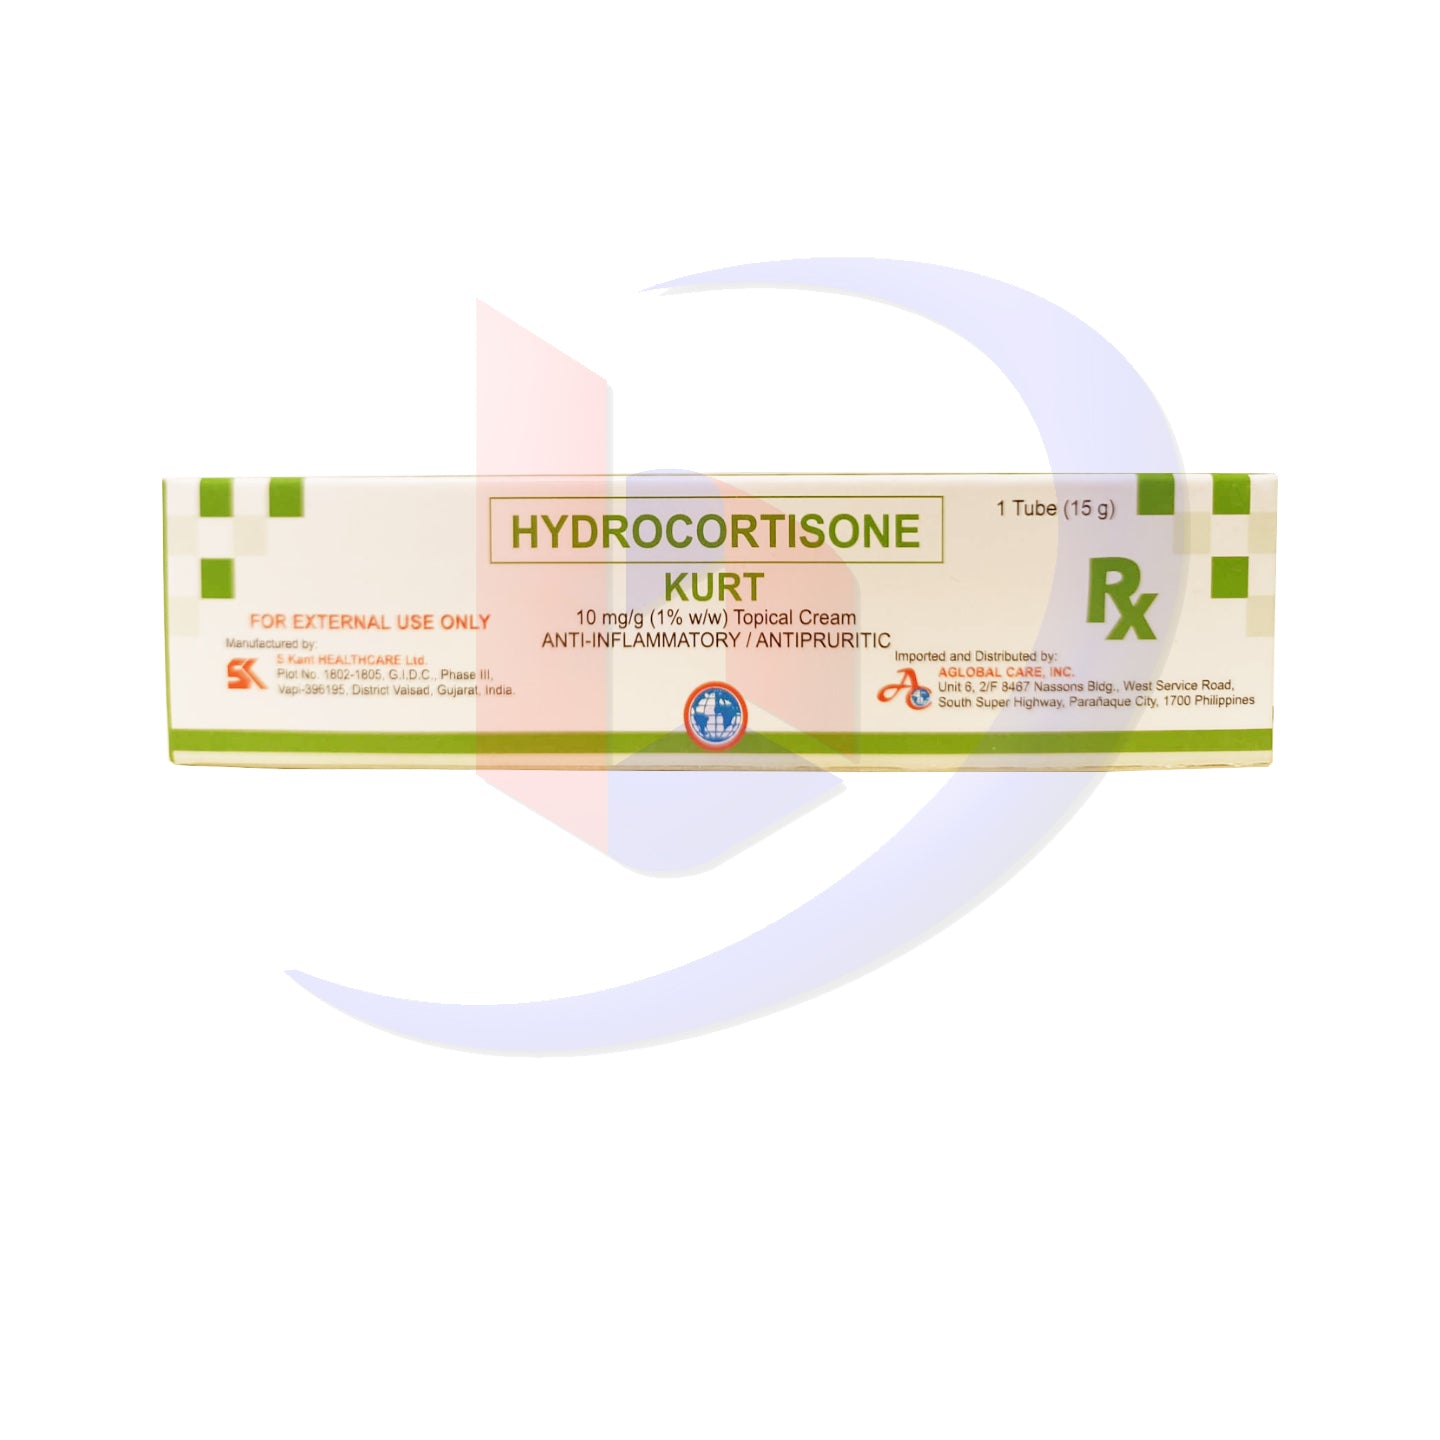 Hydrocortisone (Kurt) 10mg/g (1% w/w) Topical Cream Tube 1's 15g